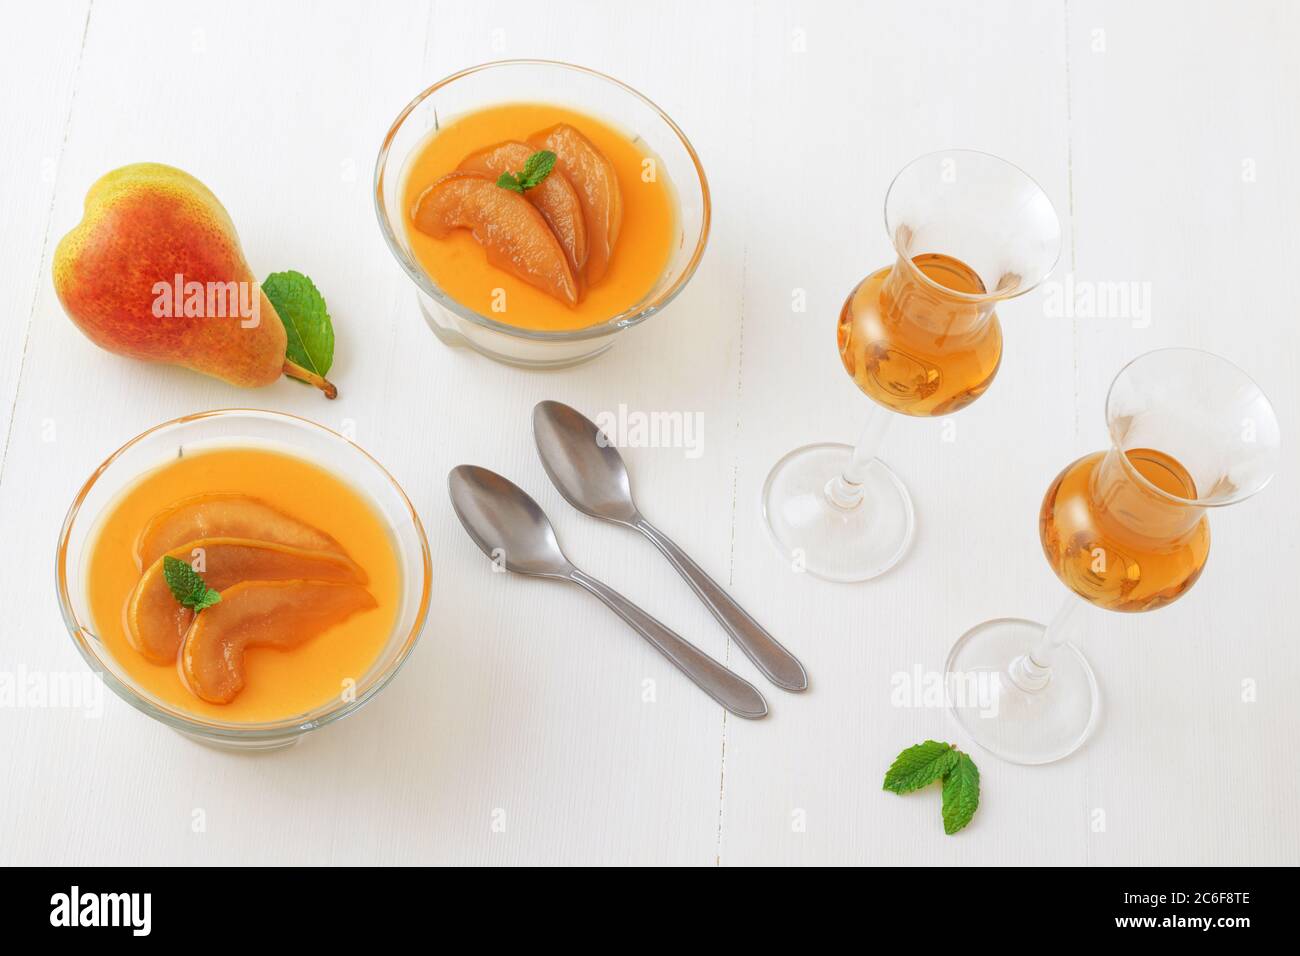 Panna cotta dessert traditionnel italien avec poires pochées dans le rhum et le sirop de miel avec un verre de rhum. Vue en grand angle, le tout sur une table en bois blanc. Banque D'Images